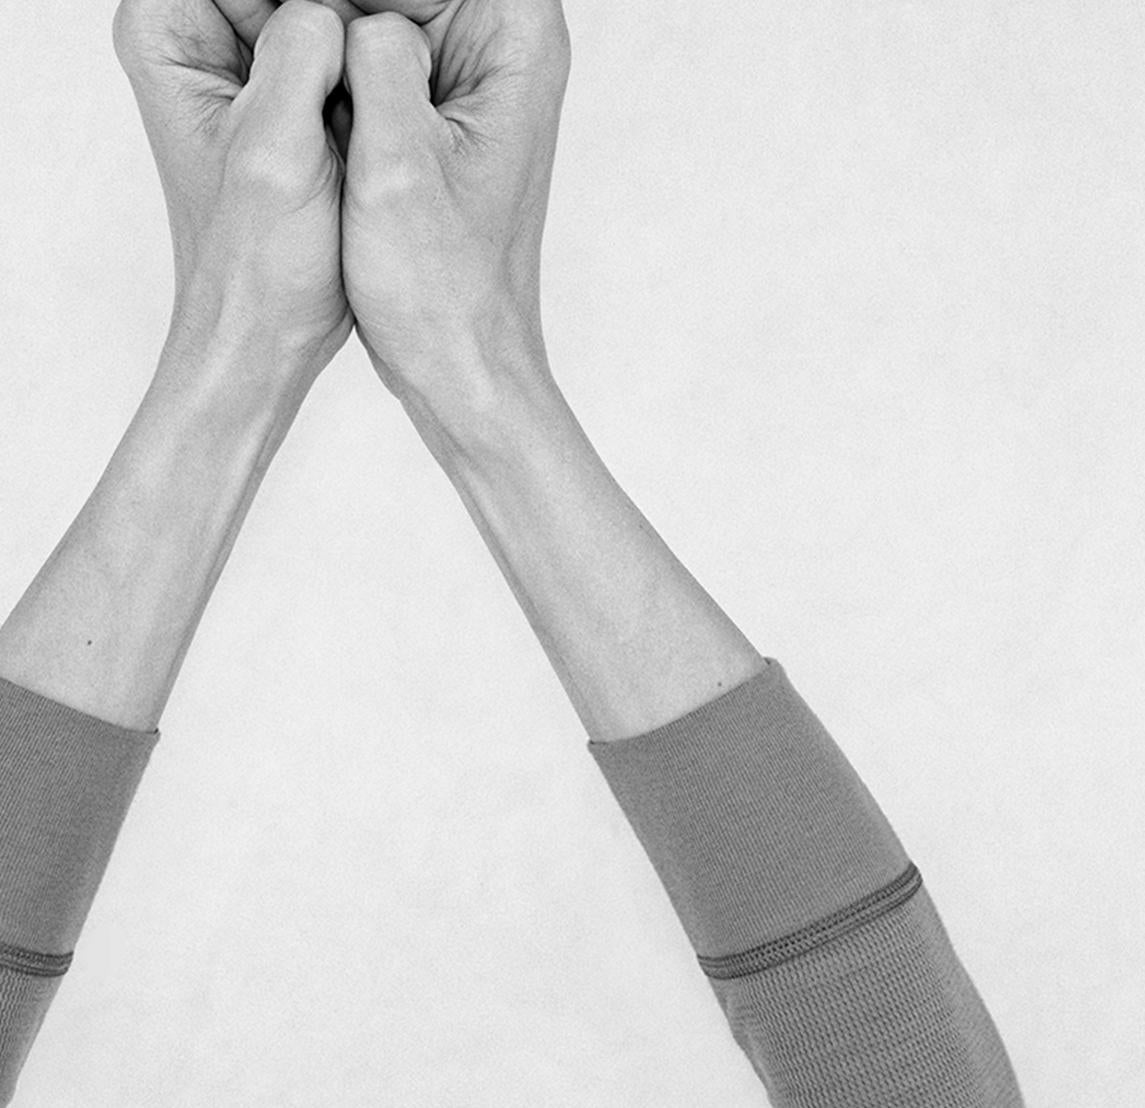 Ohne Titel XXII. Aus der Serie Chiromorphose. Die Hände. Schwarzweiß-Fotografie (Ästhetizismus), Photograph, von Nico Baixas / Gos-com-fuig